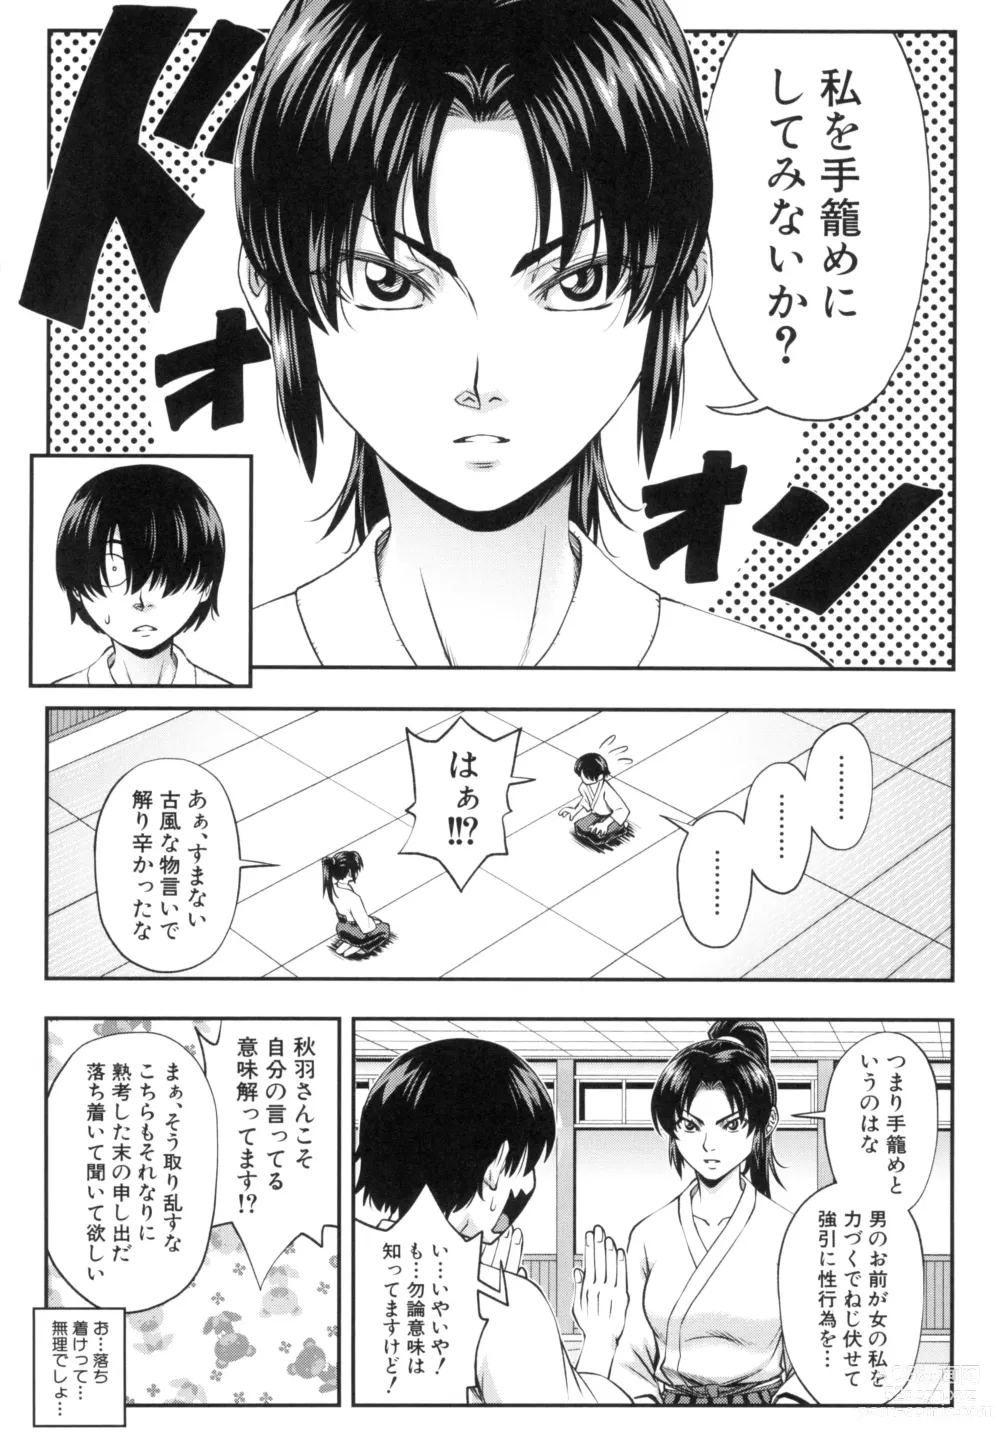 Page 7 of manga Yareba Yaru Hodo Suki ni Naru